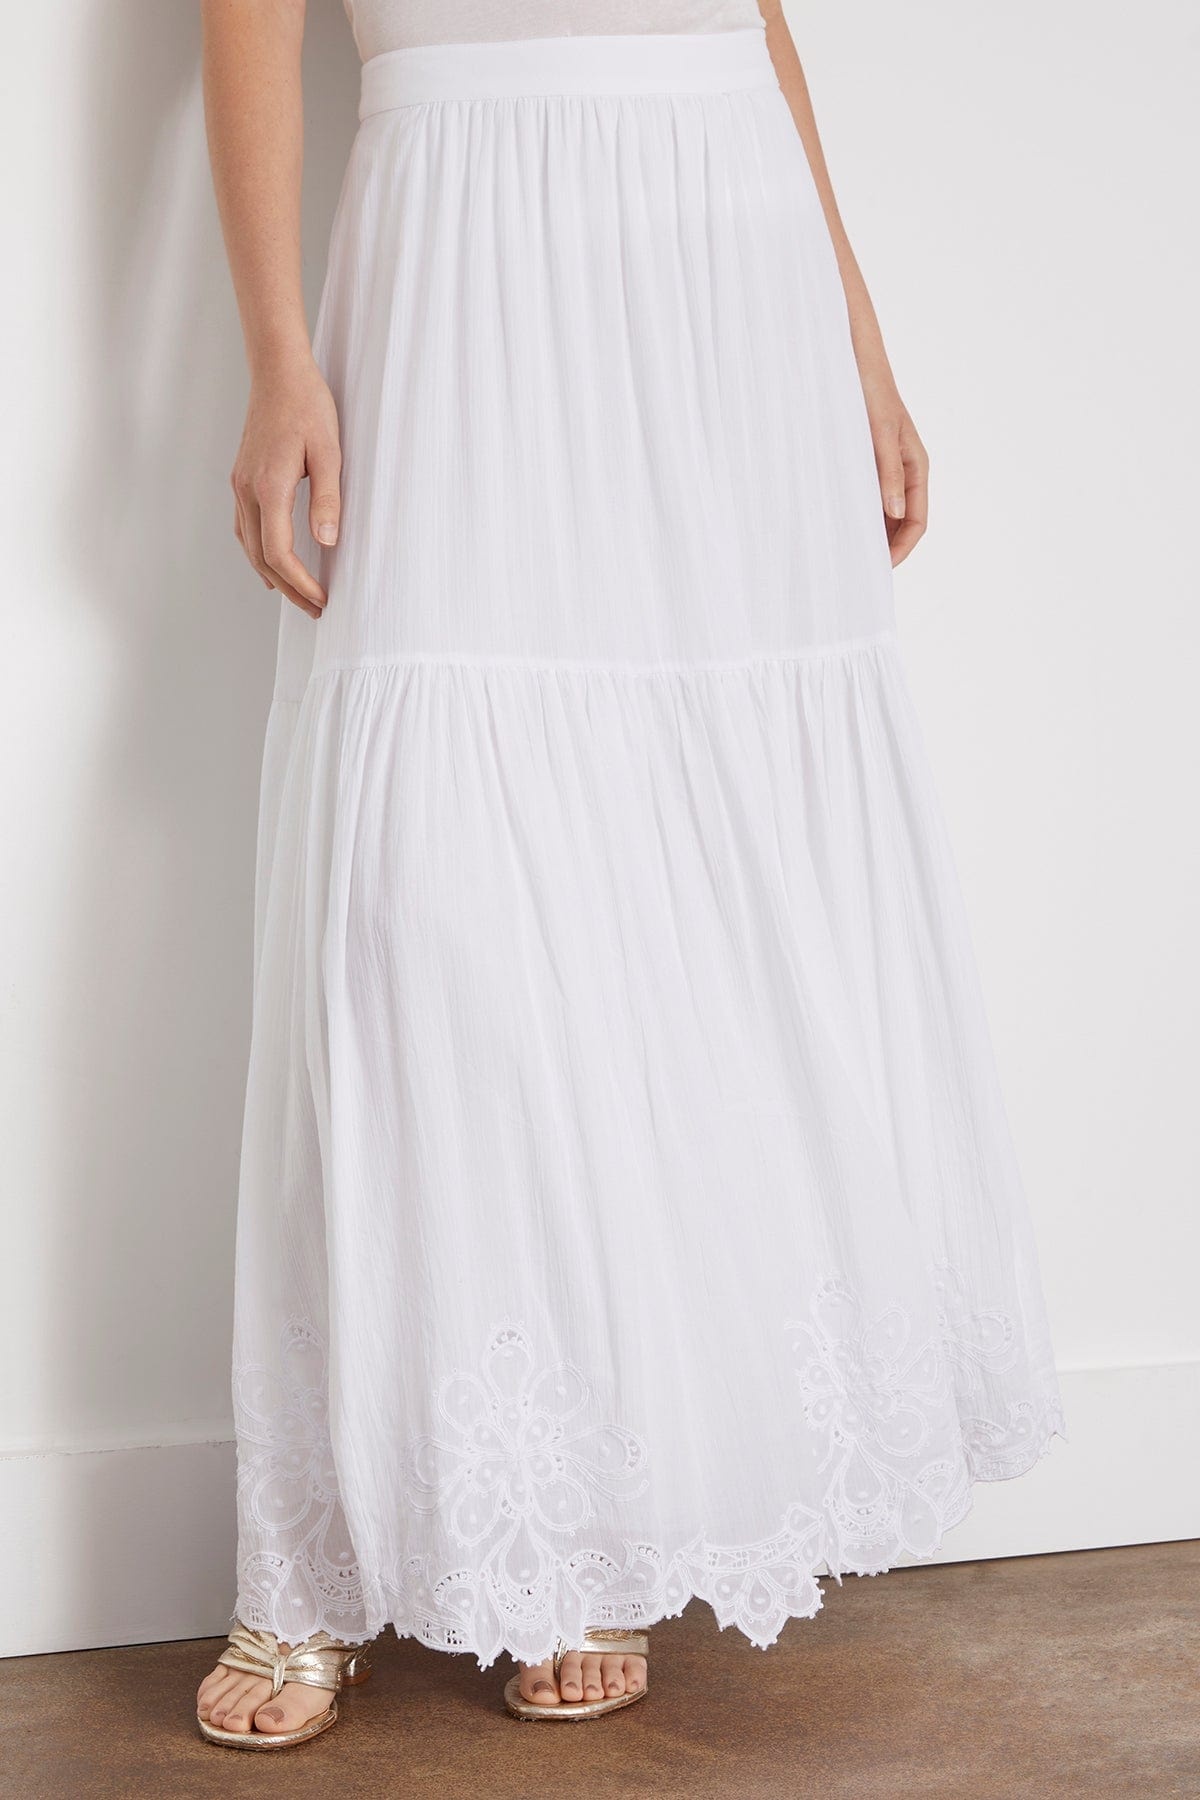 Antoinette Skirt in Blanc - 3